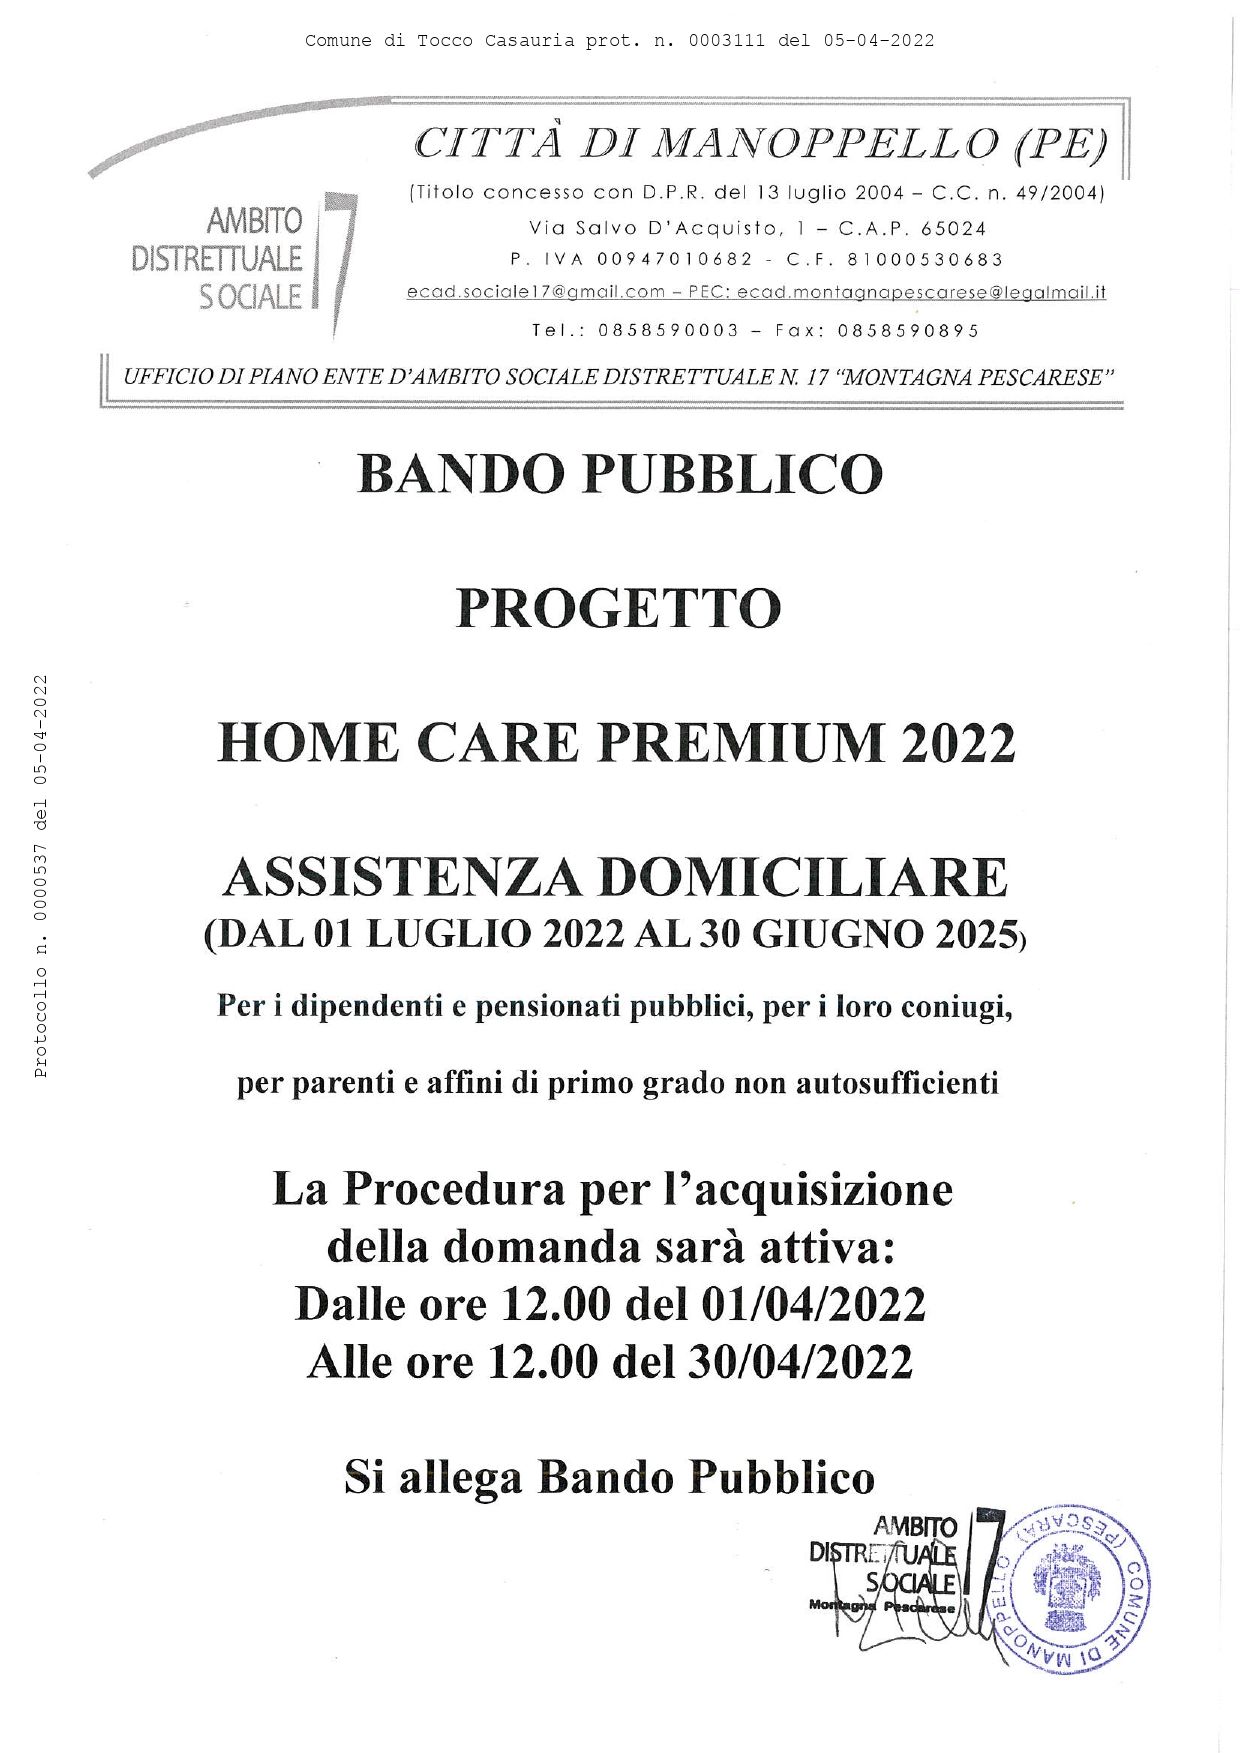 BANDO PUBBLICO - Progetto Home Care Premium 2022 - Assistenza domiciliare